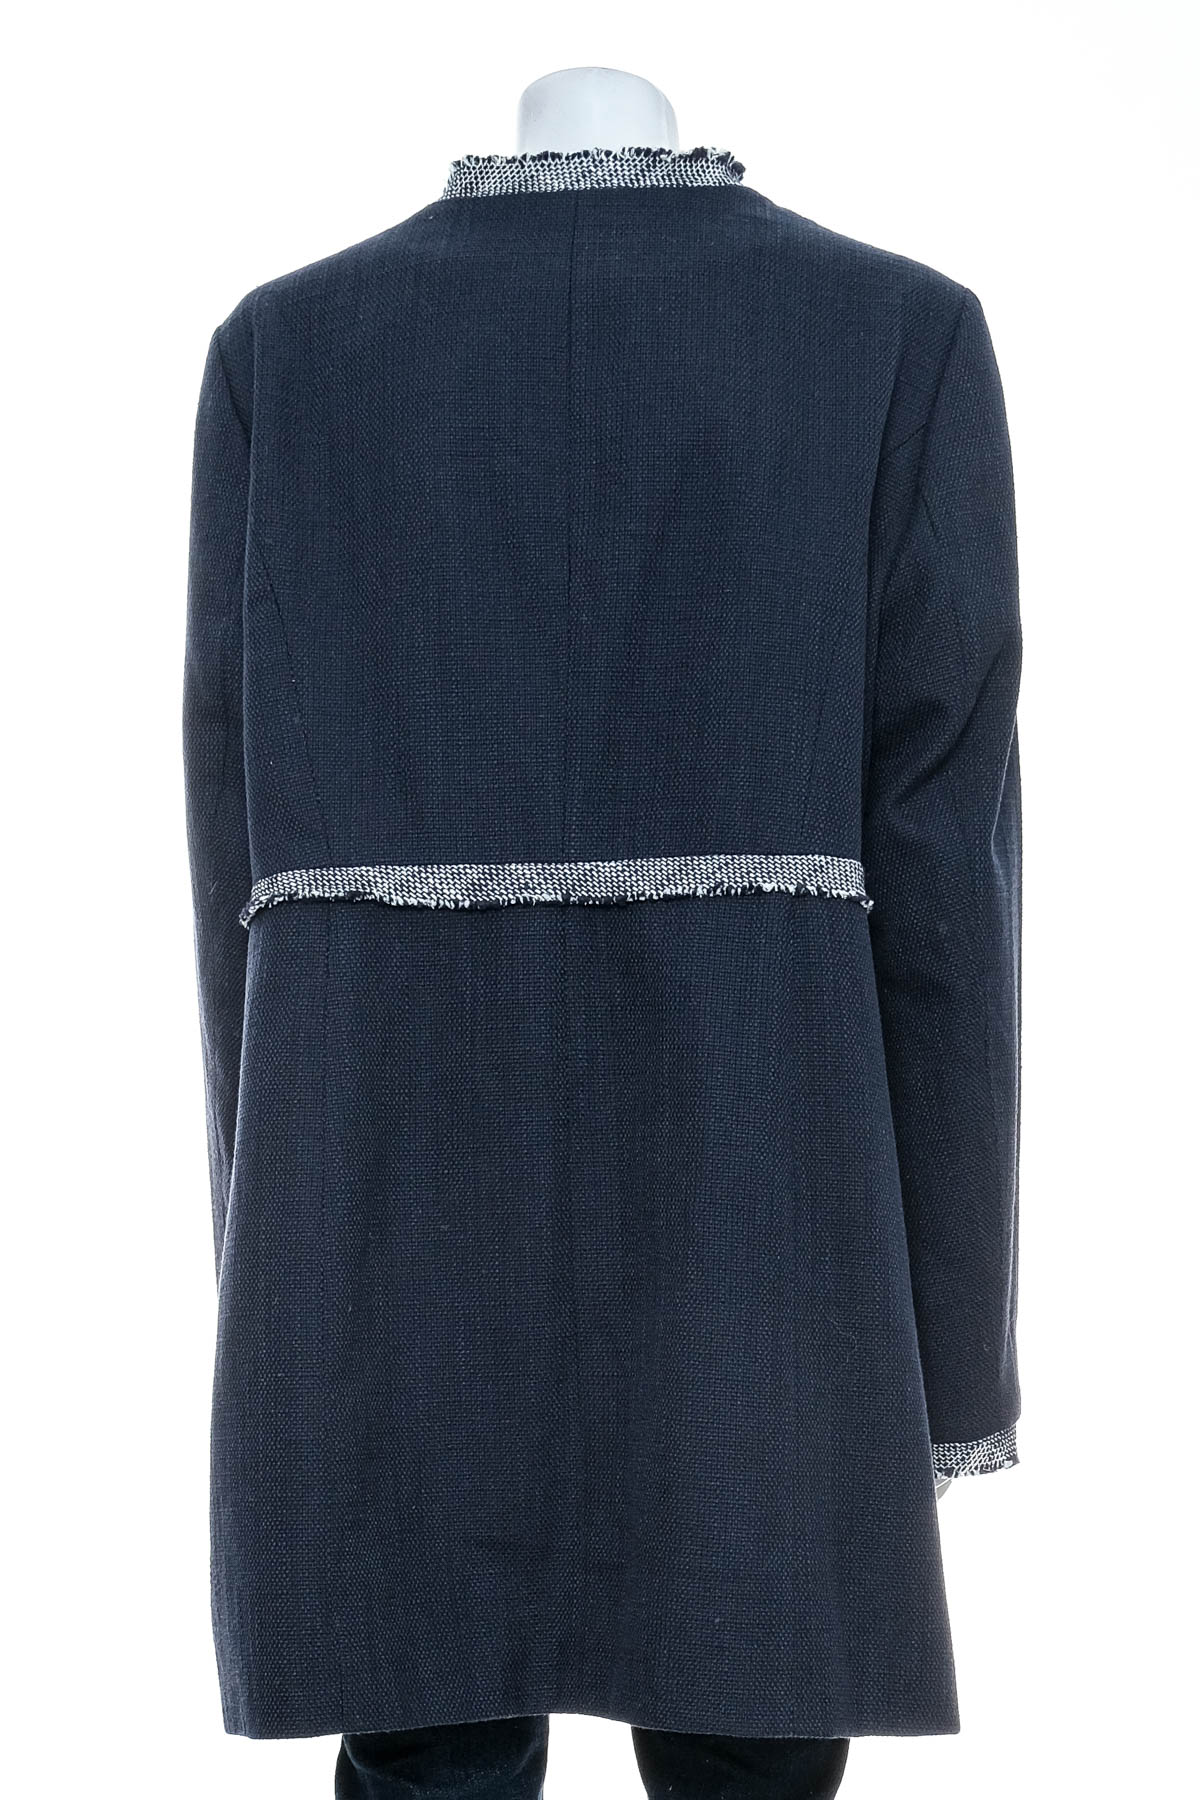 Women's coat - Heine - 1